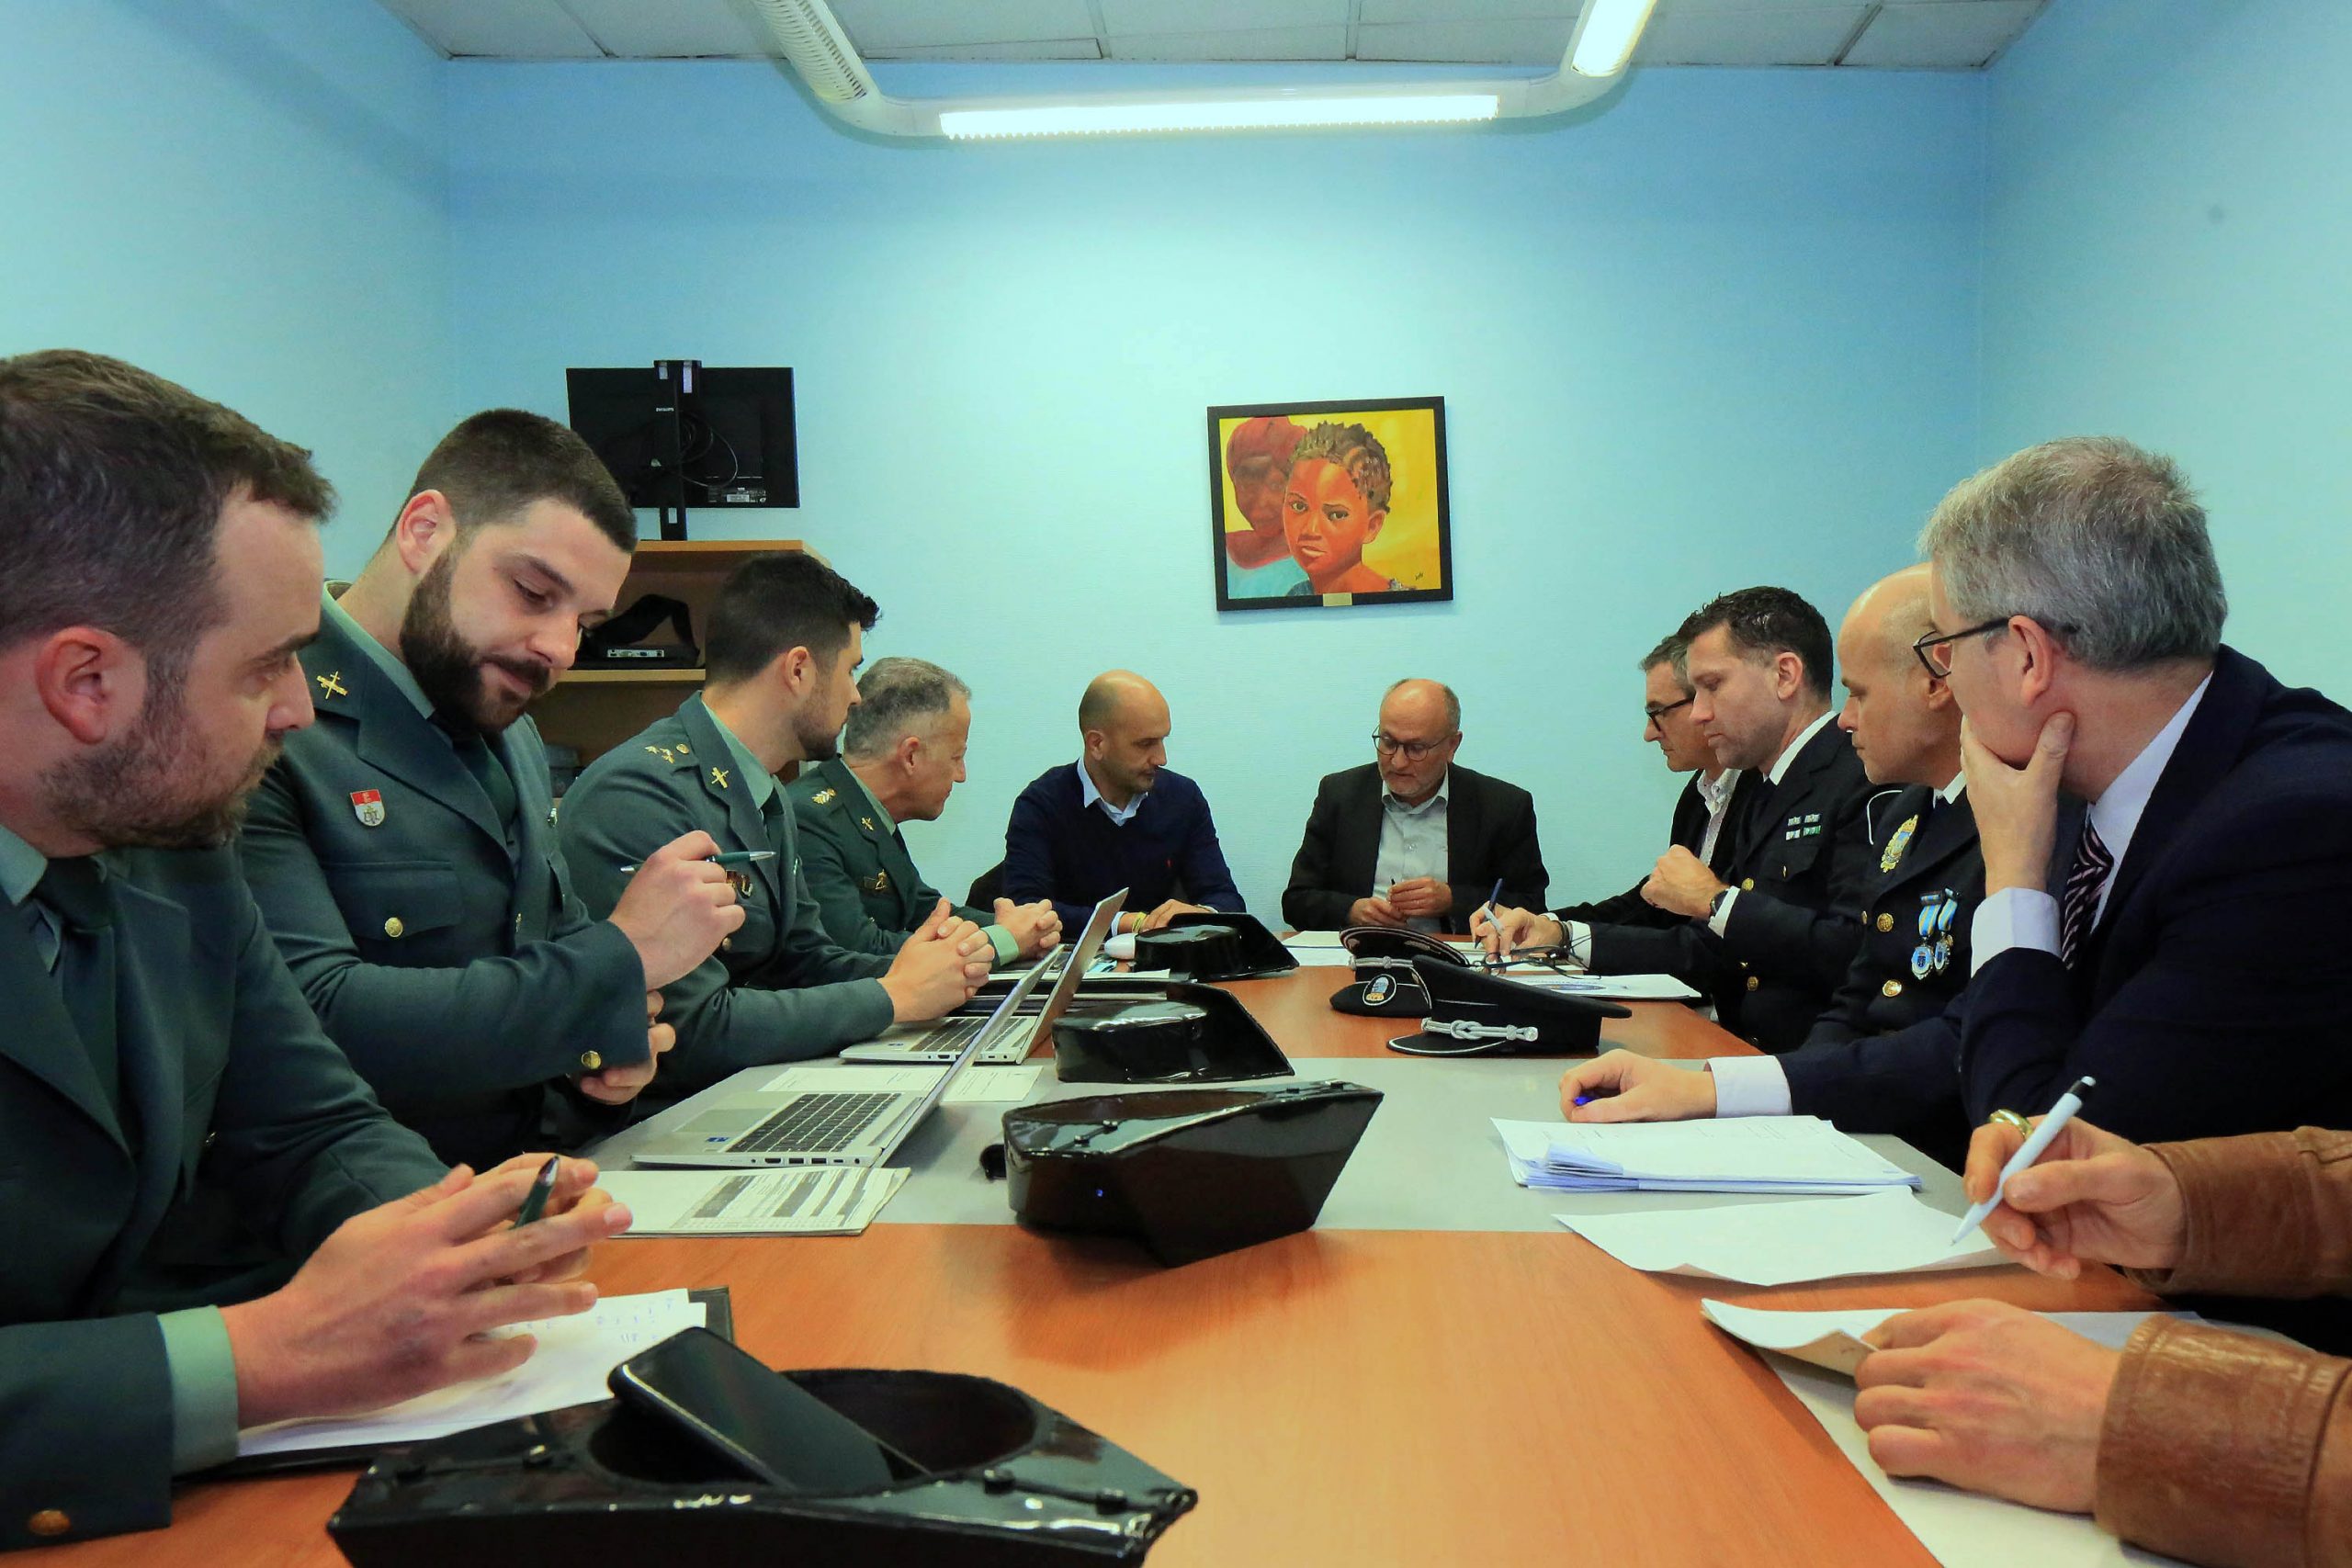 A Xunta Local de Seguridade aposta por reforzar a coordinación para unha resposta máis eficaz